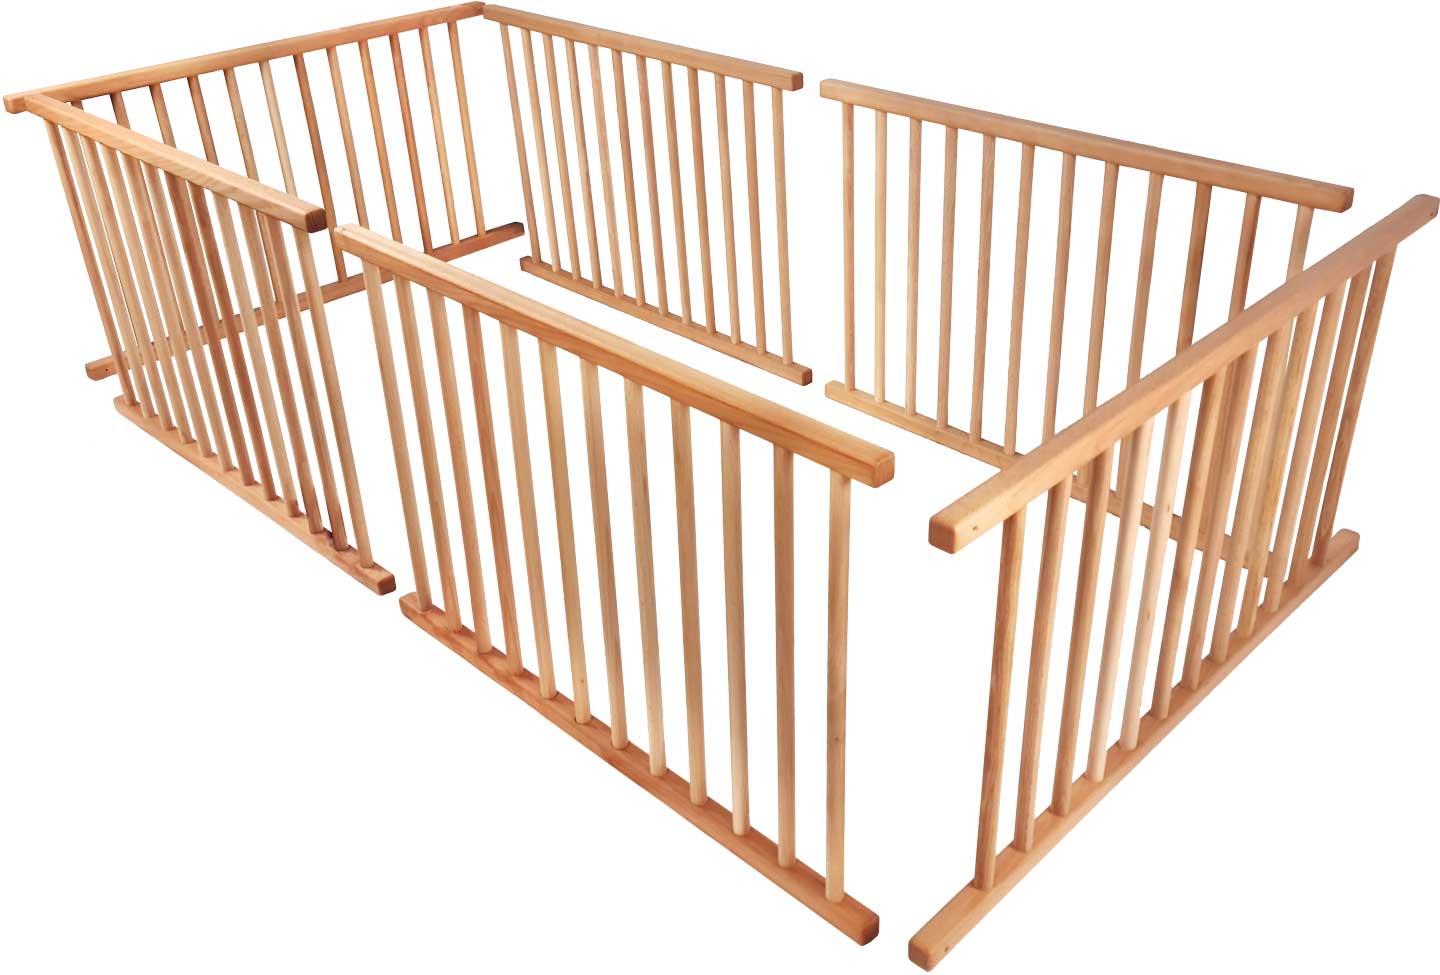 Detská brána nastavená na celú ležiacu plochu (podkrovná posteľ rastúca s dieťaťom, poschodová posteľ nad rohom* alebo odsadenie poschodovej postele*)